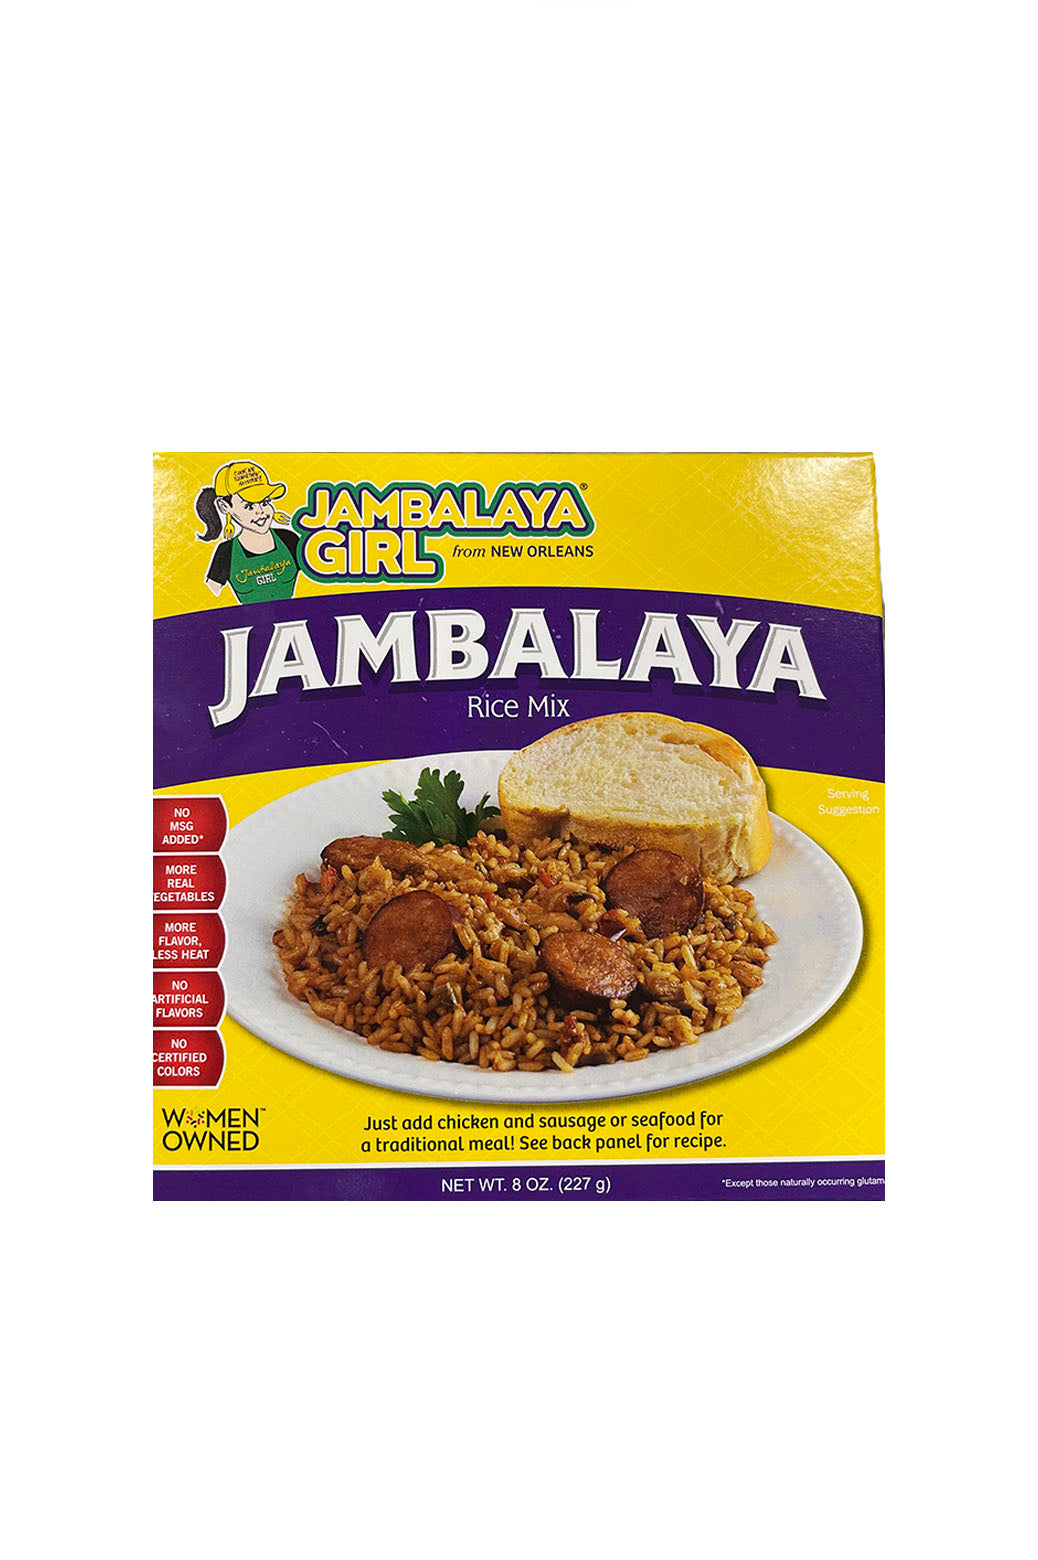 Jambalaya : Louisiana Fish Fry Jambalaya Mix - A Delicious